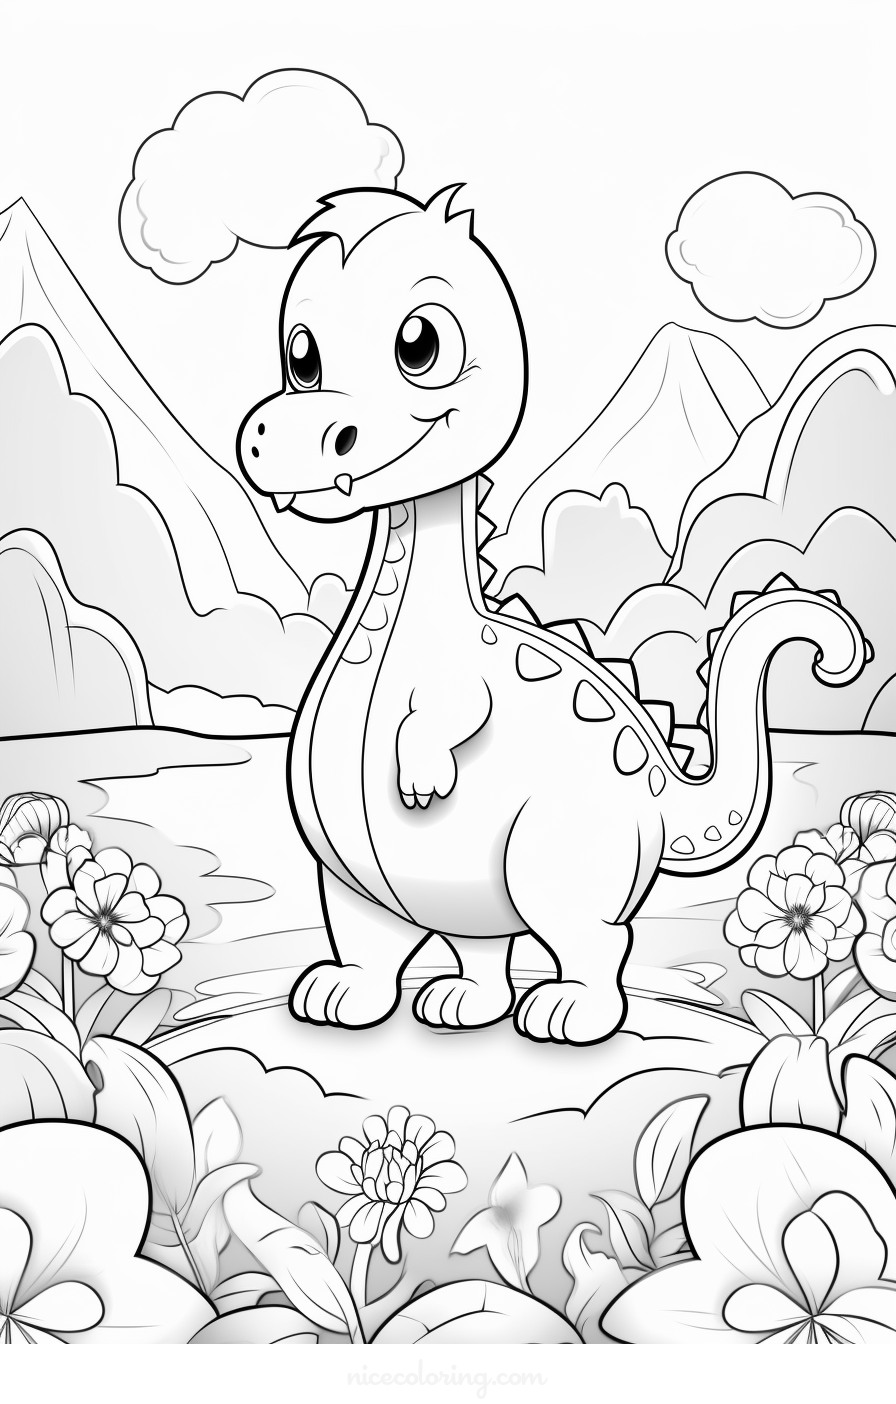 Una escena detallada de dinosaurios para colorear.